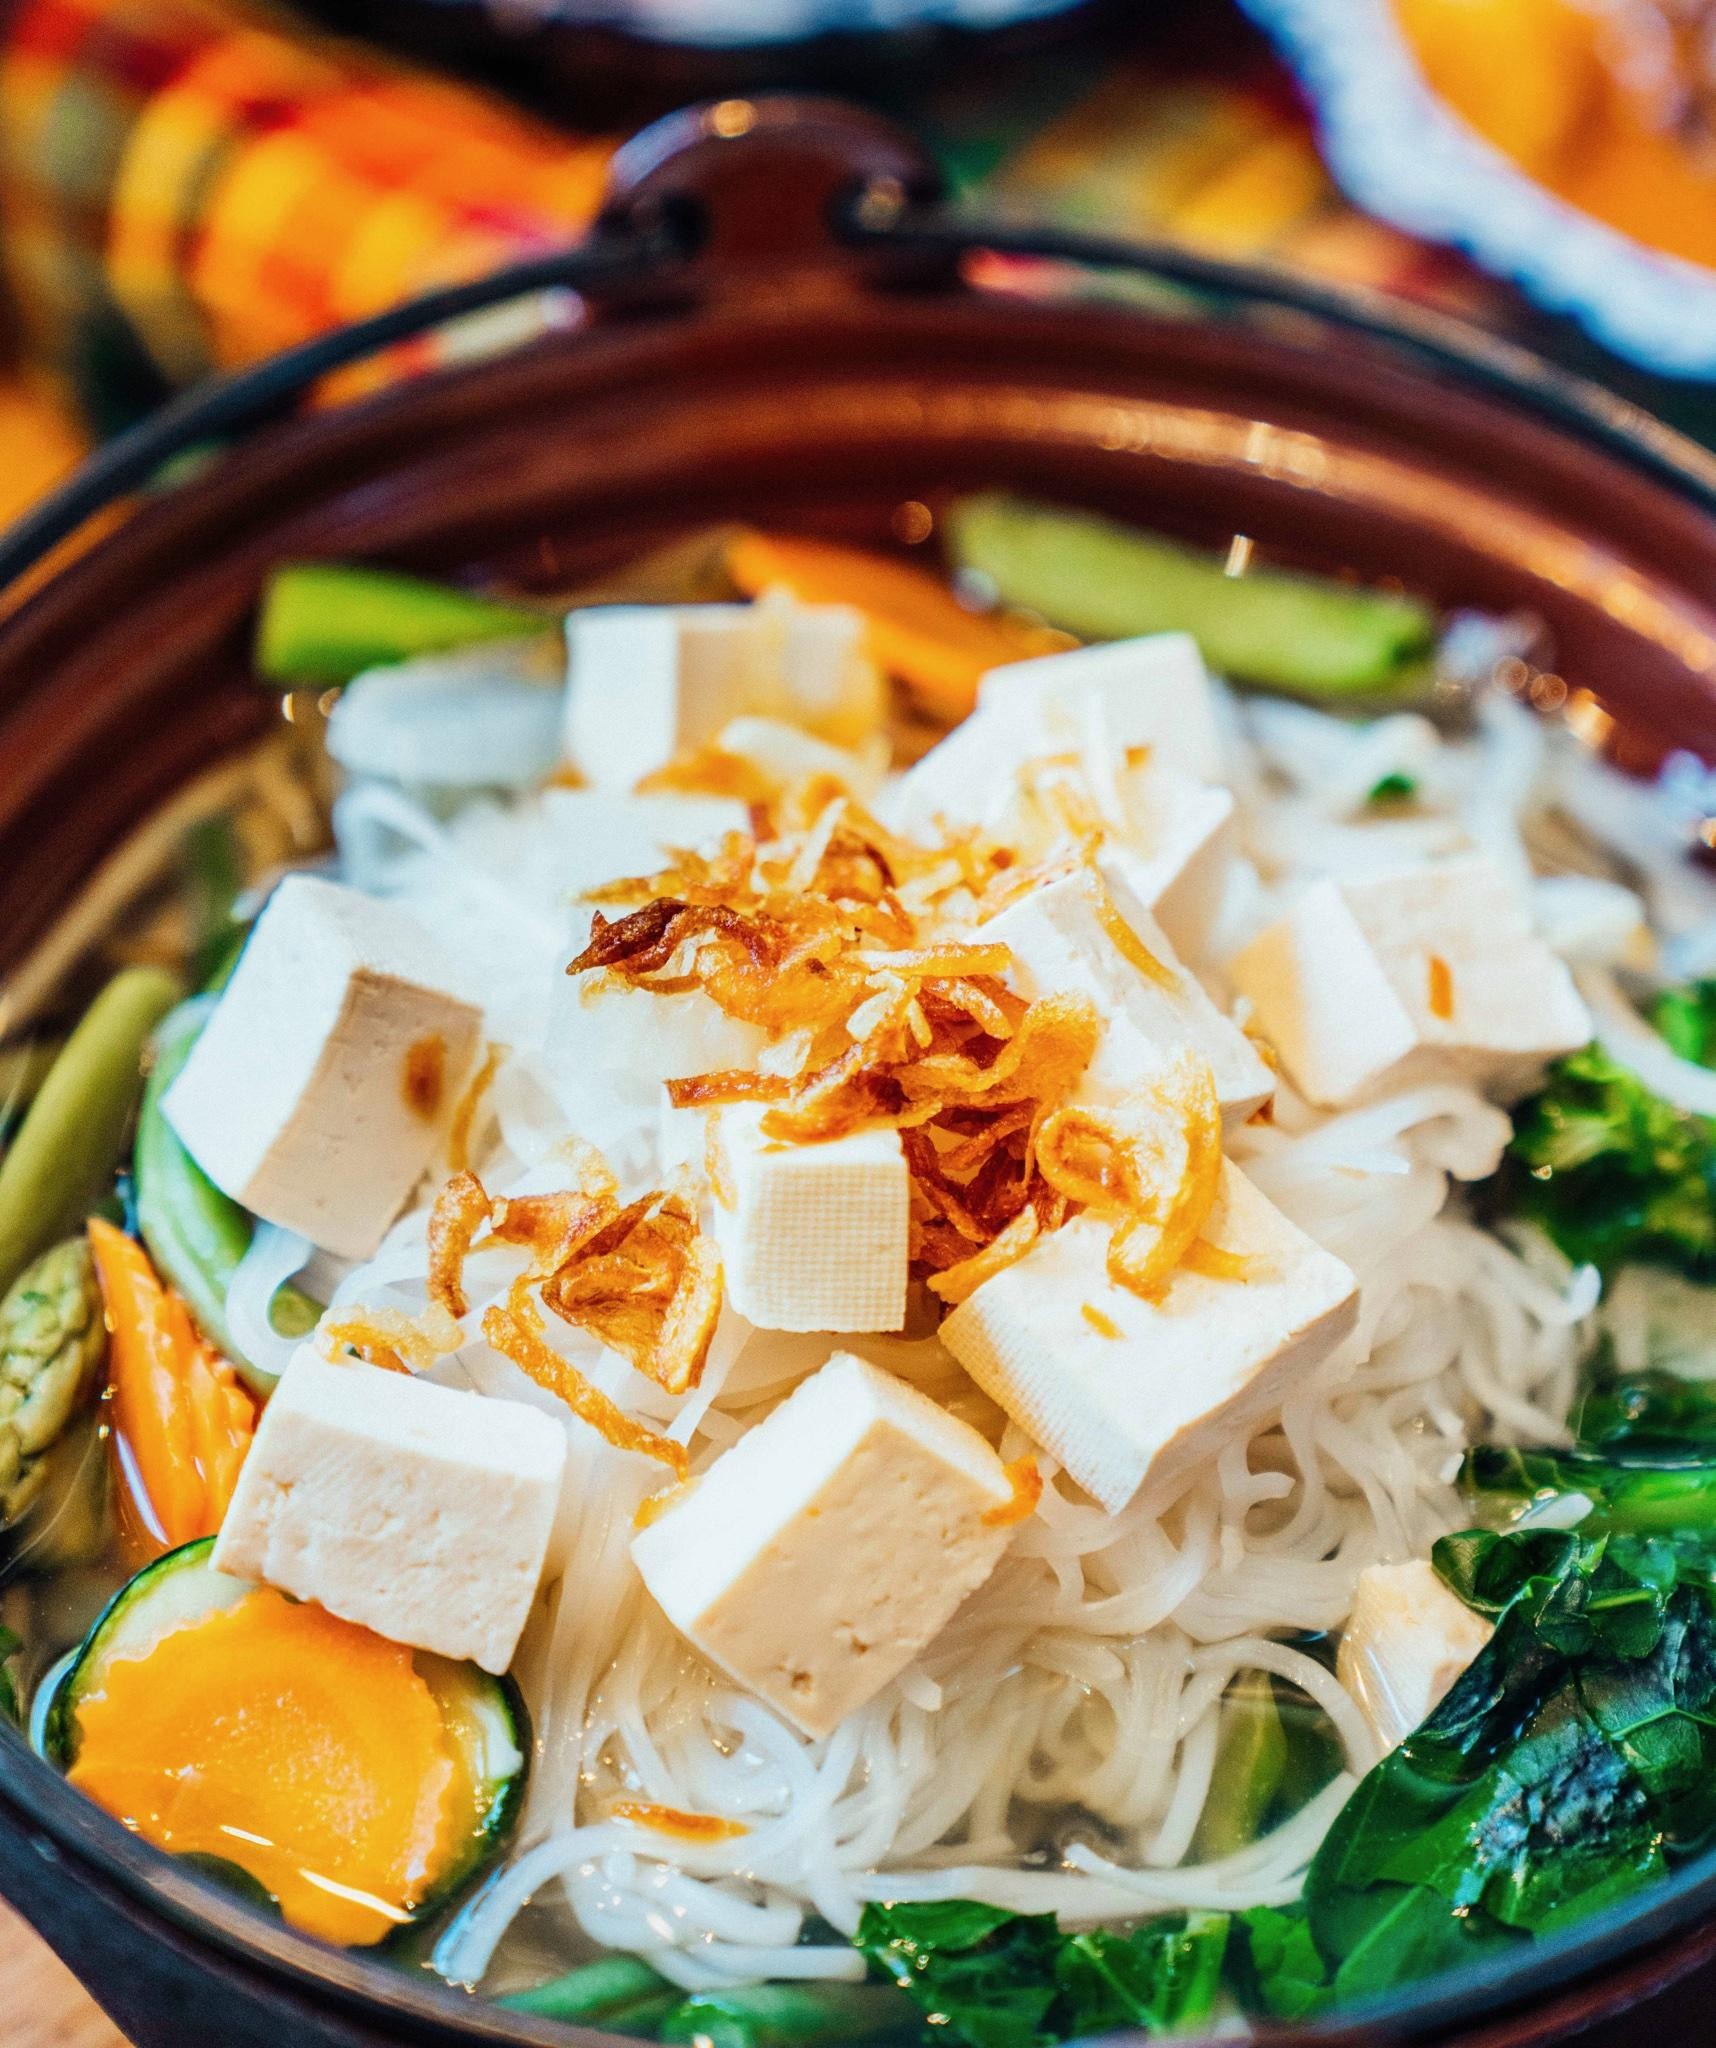 Tofu Noodle Soup